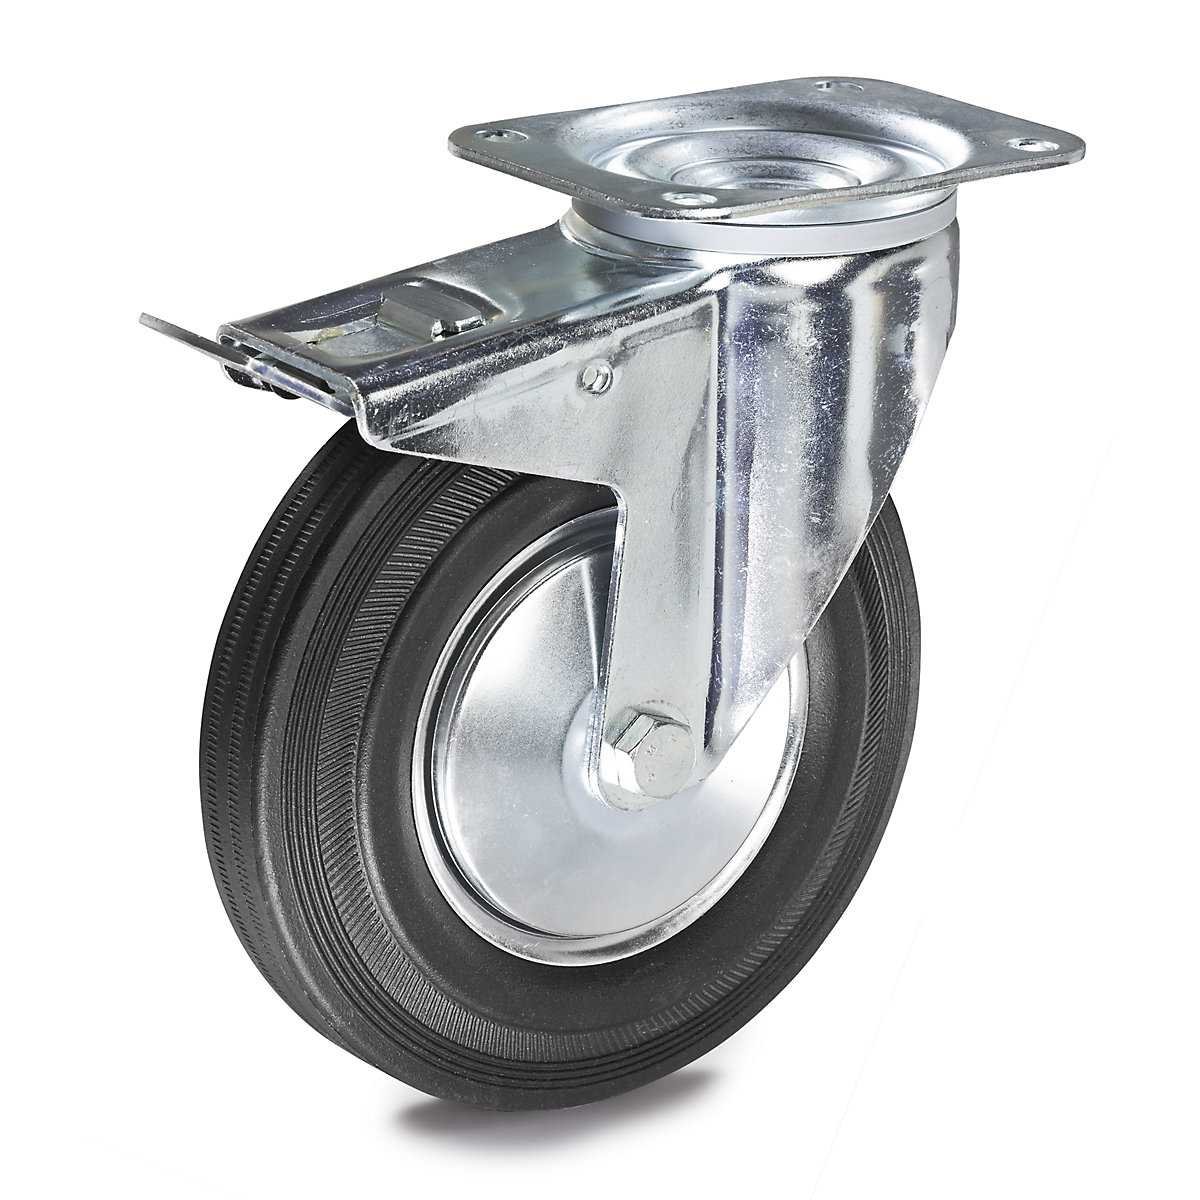 Celogumová obruč – Proroll, Ø x šírka kolesa 80 x 25 mm, otočné koliesko s dvojitou brzdou-5